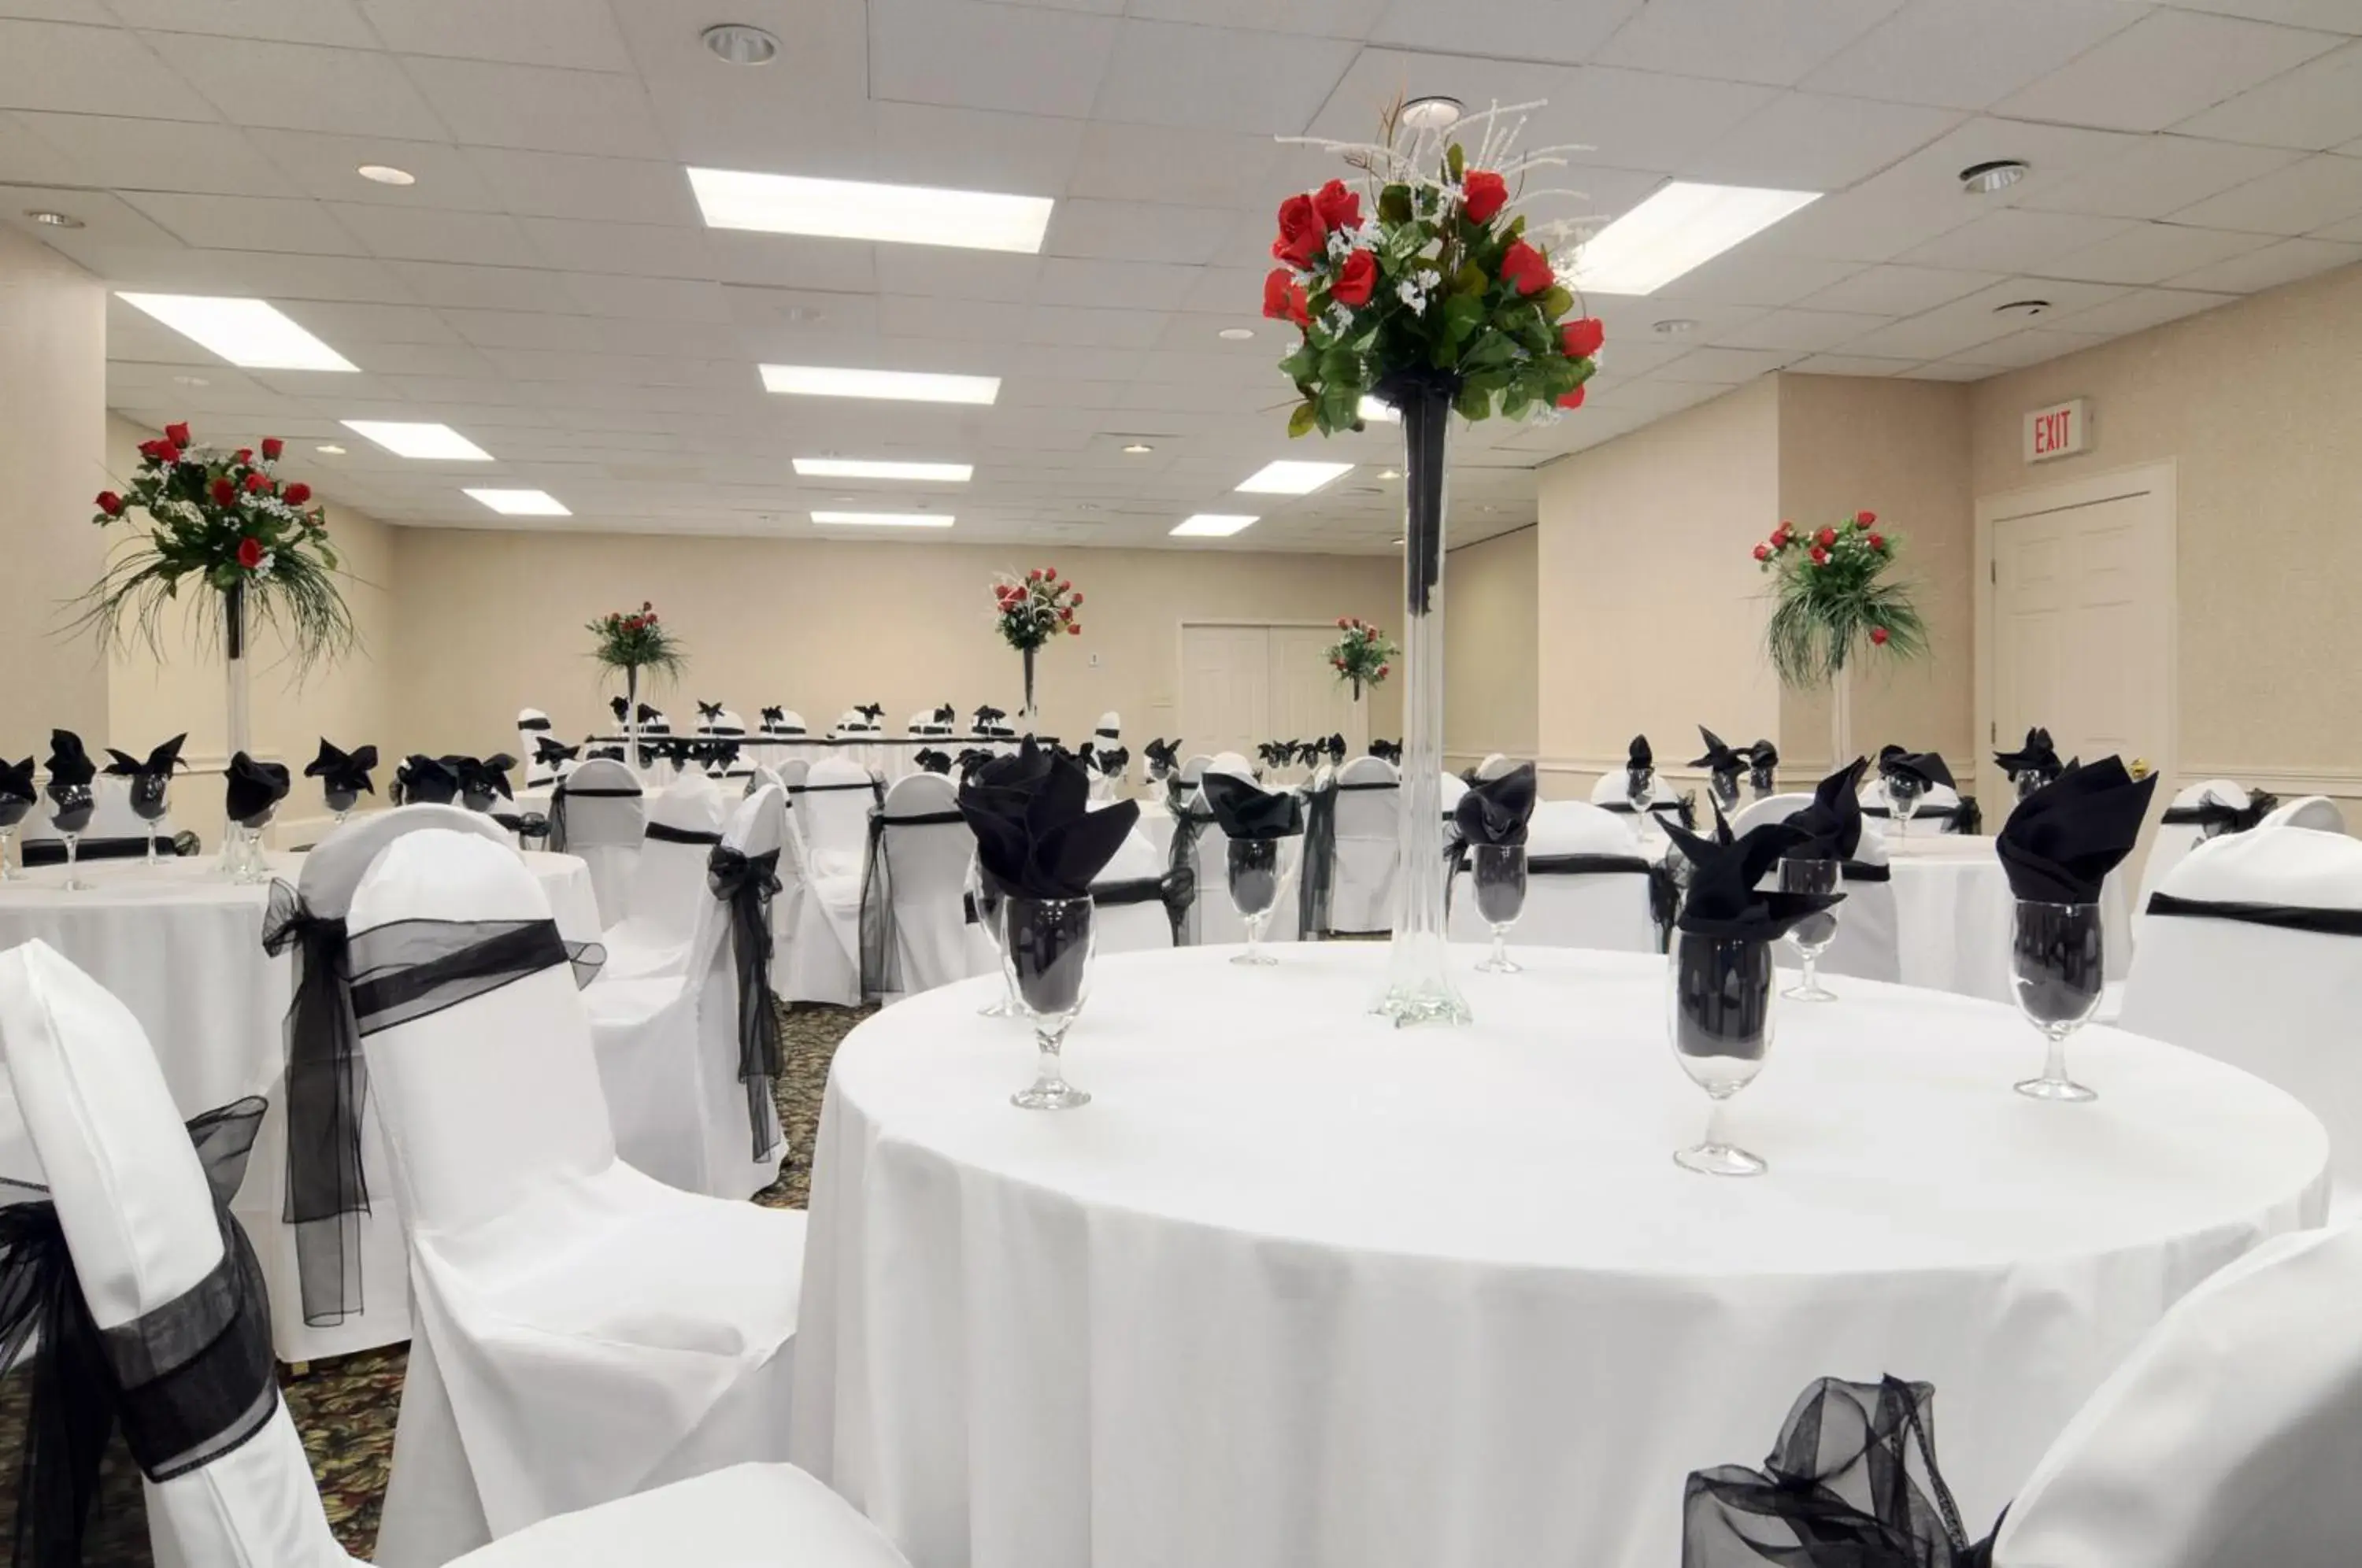 Banquet/Function facilities, Banquet Facilities in Ramada by Wyndham & Suites Warner Robins